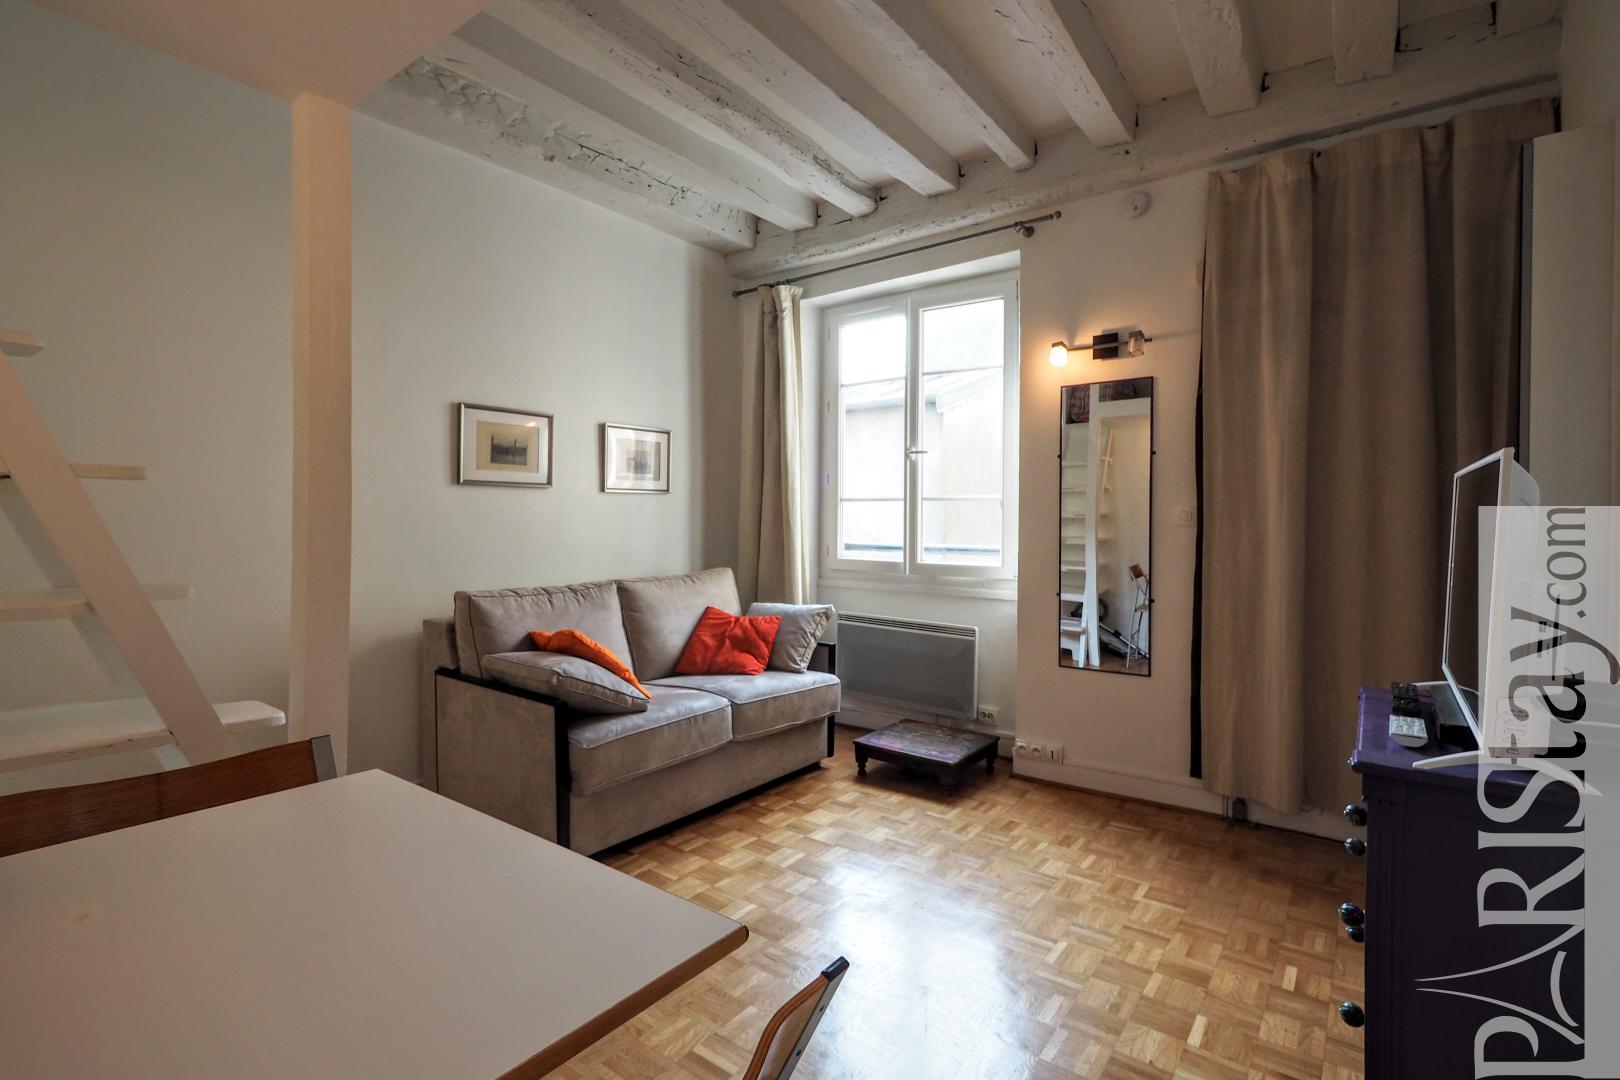 Flat for rent Paris France studio rental le Marais